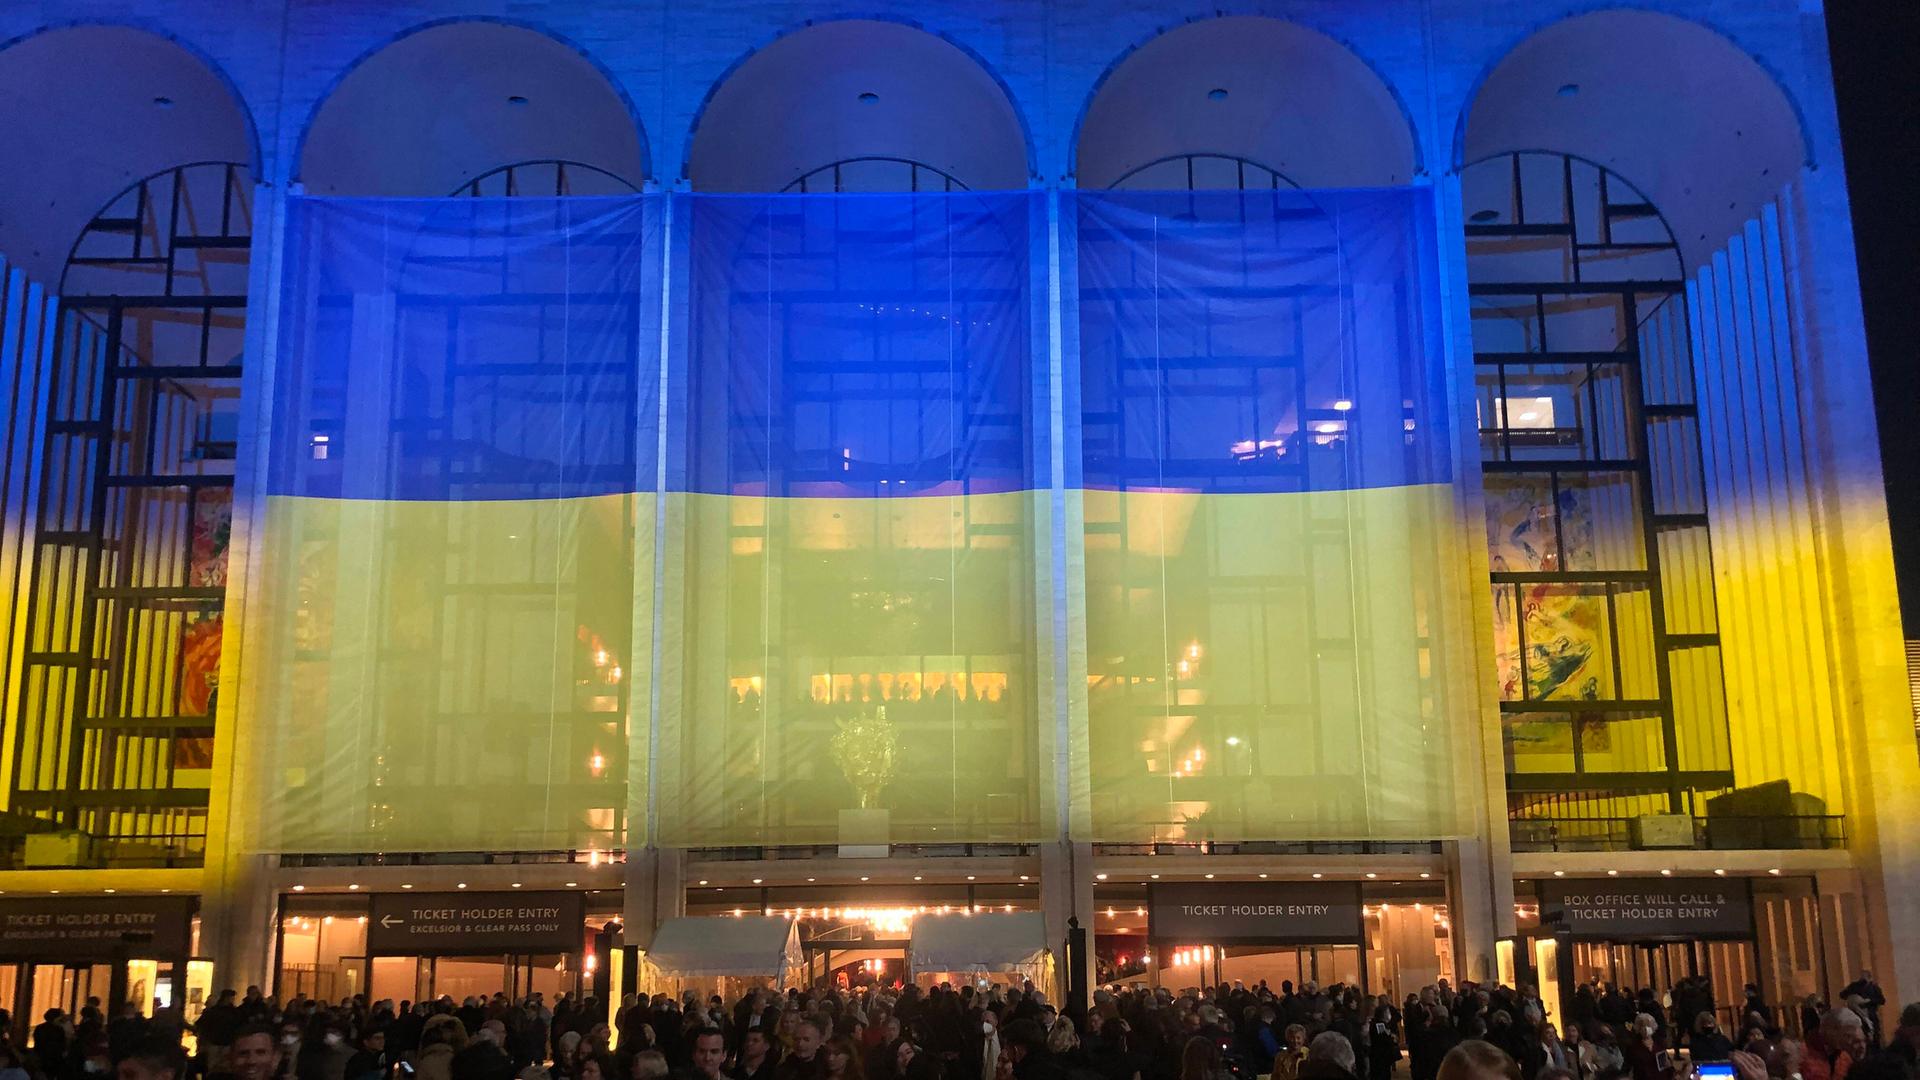 Vor den großen Eingangsbögen der MET ist eine große blau-gelbe Fahne gespannt, auf die viele Menschen zulaufen.